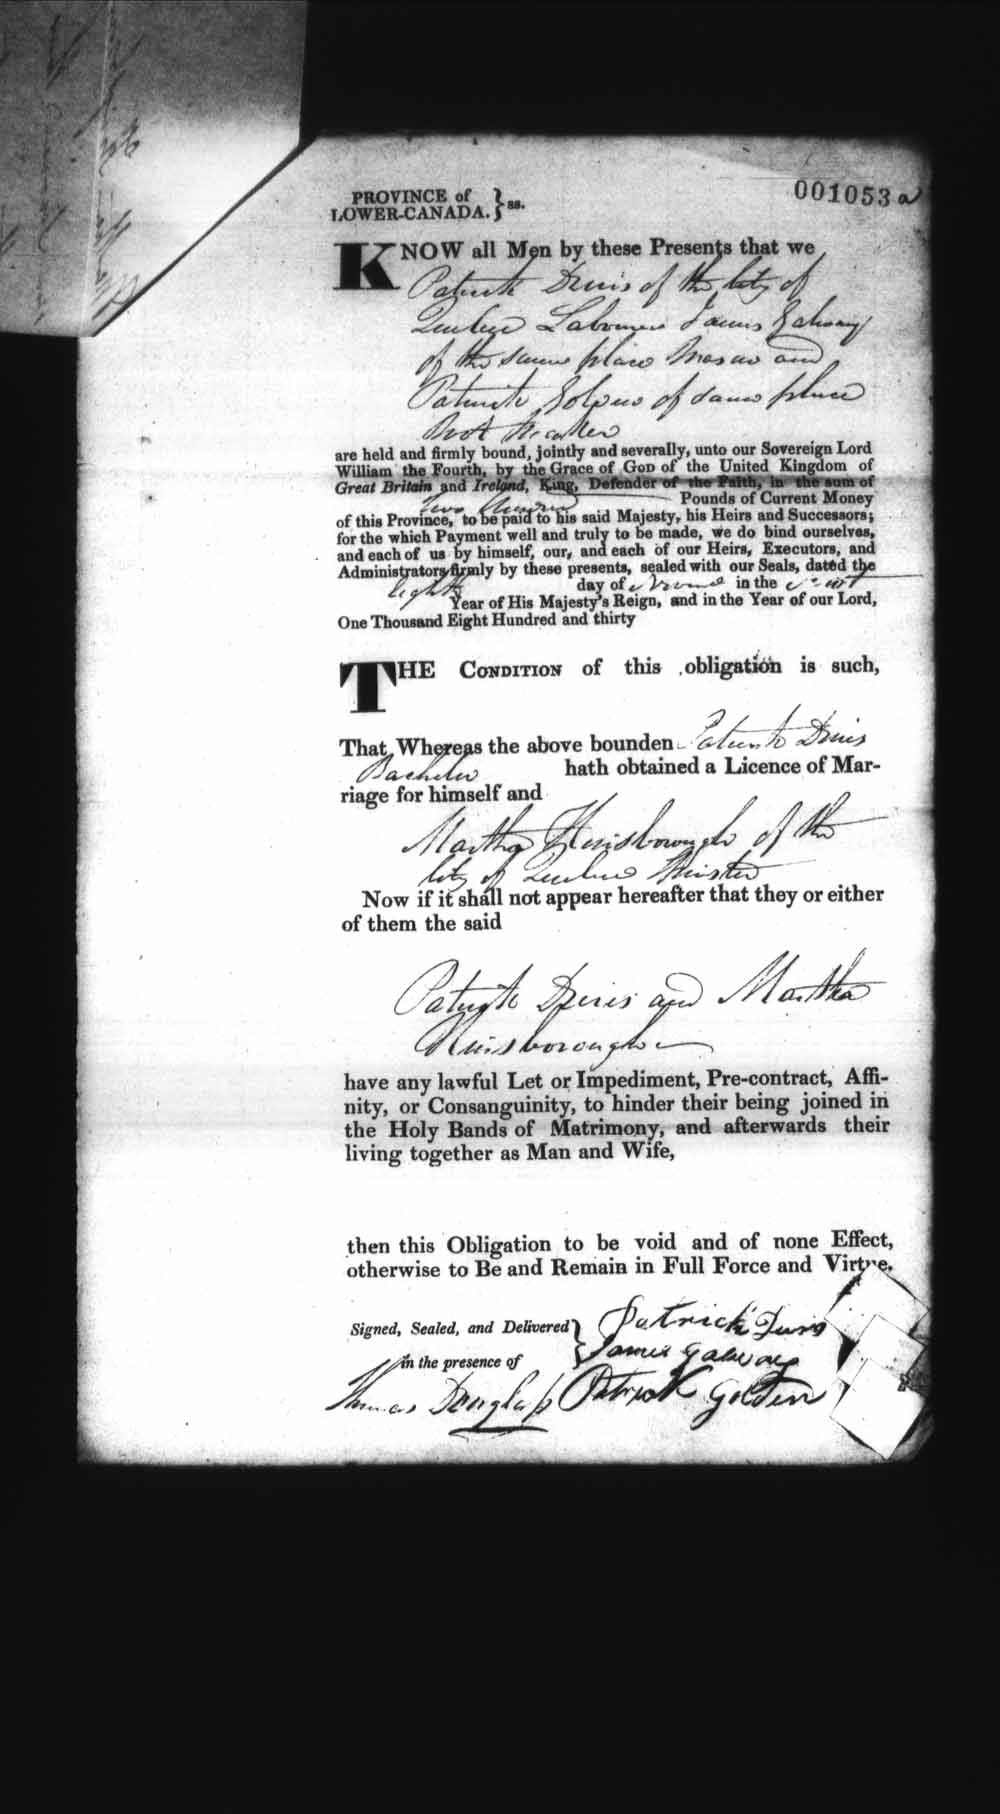 Page numérisé de Cautionnements de mariages pour le Haut-Canada et le Bas-Canada (1779-1865) pour l'image numéro: e008237178